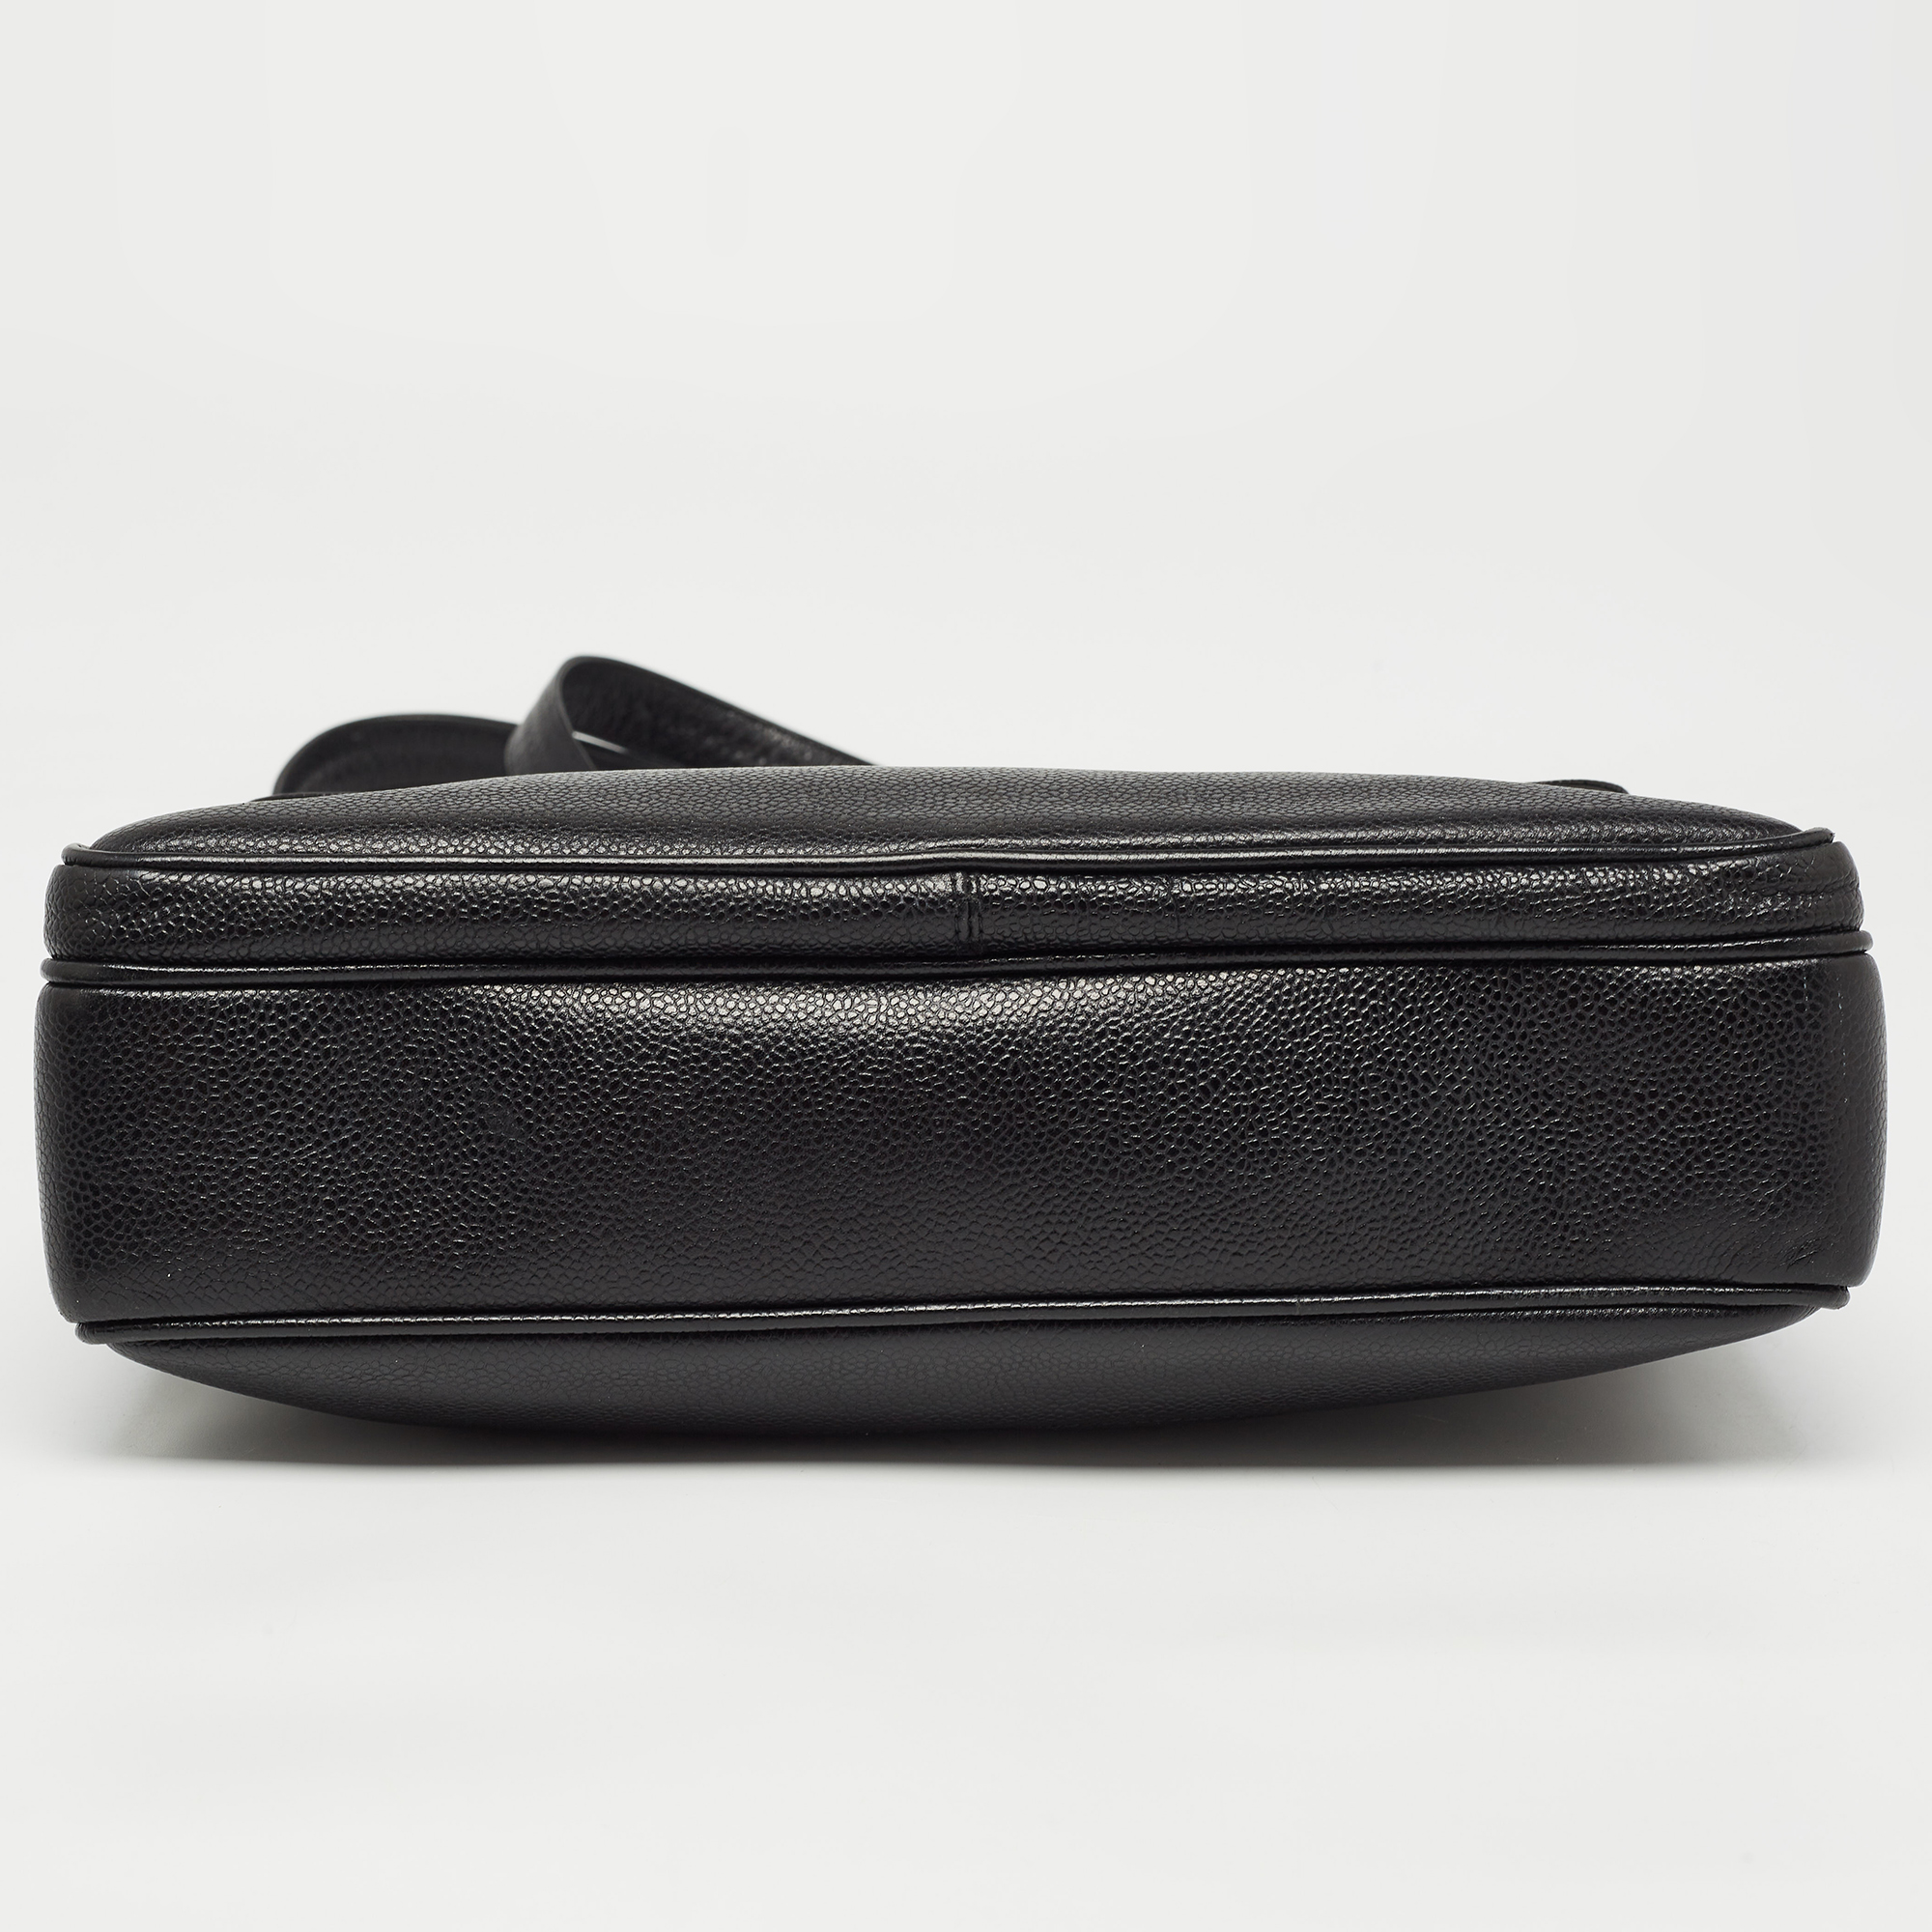 Chanel Black Caviar Leather Classic Pocket Shoulder Bag